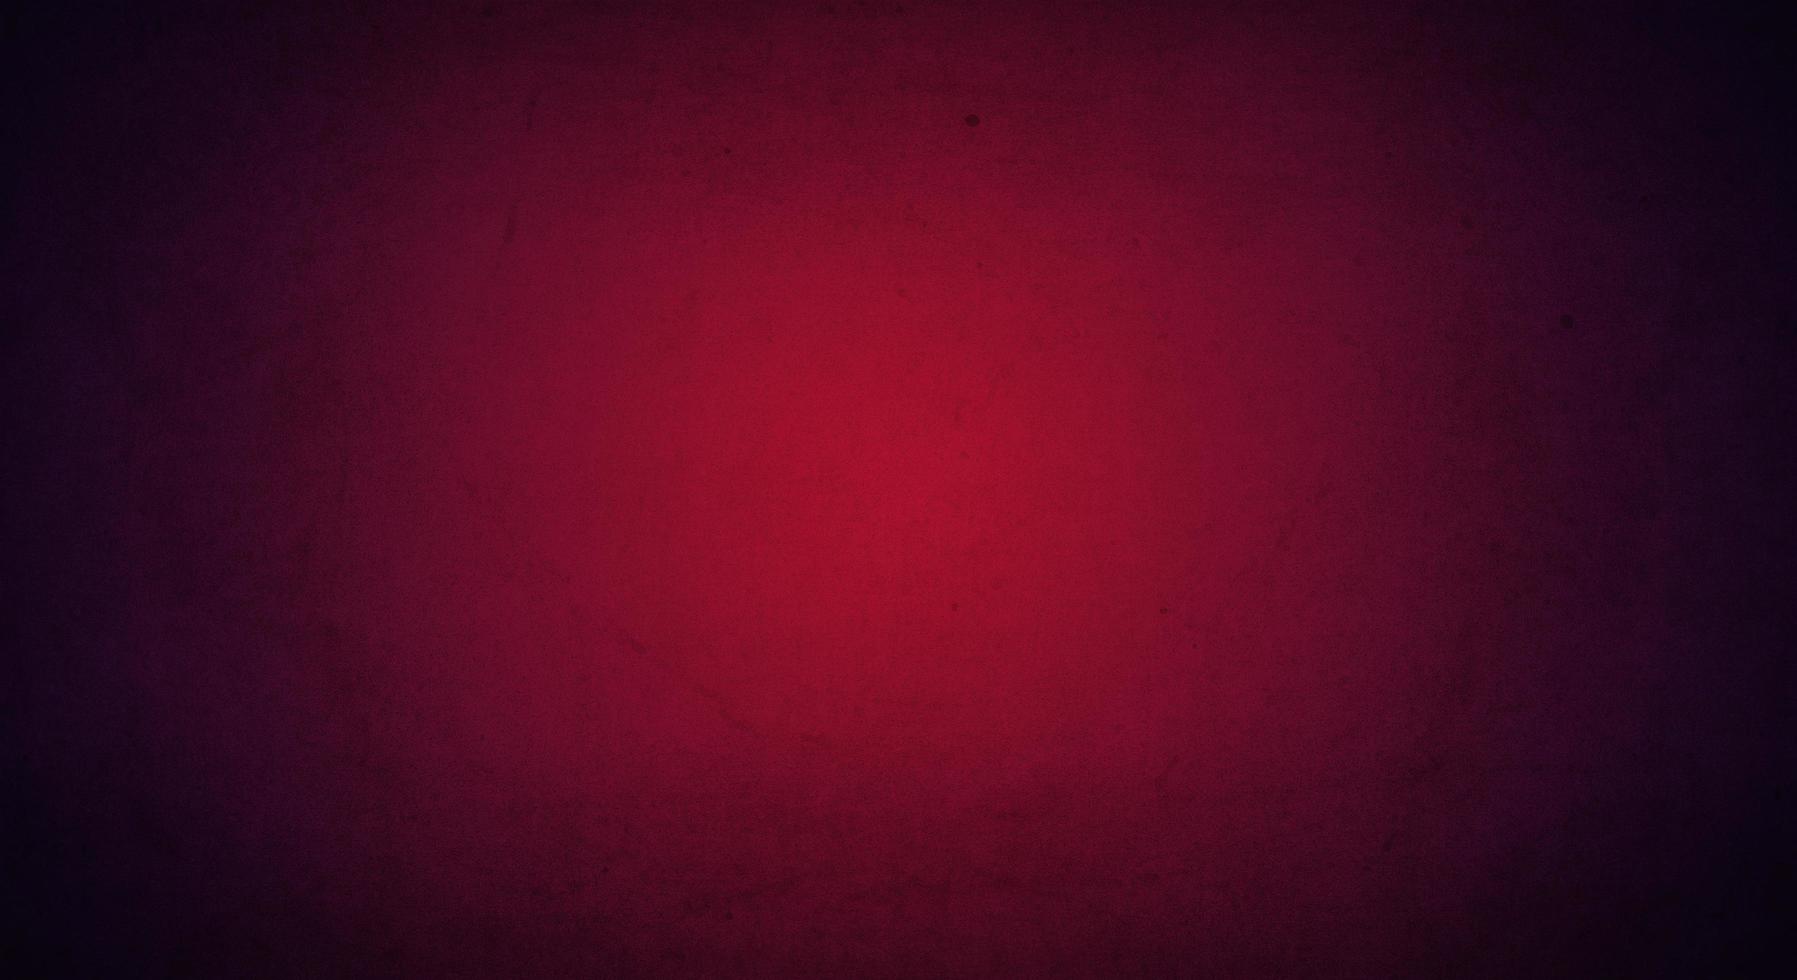 sfondo grunge viola rosso con bordo chiaro e scuro morbido, vecchio sfondo vintage foto